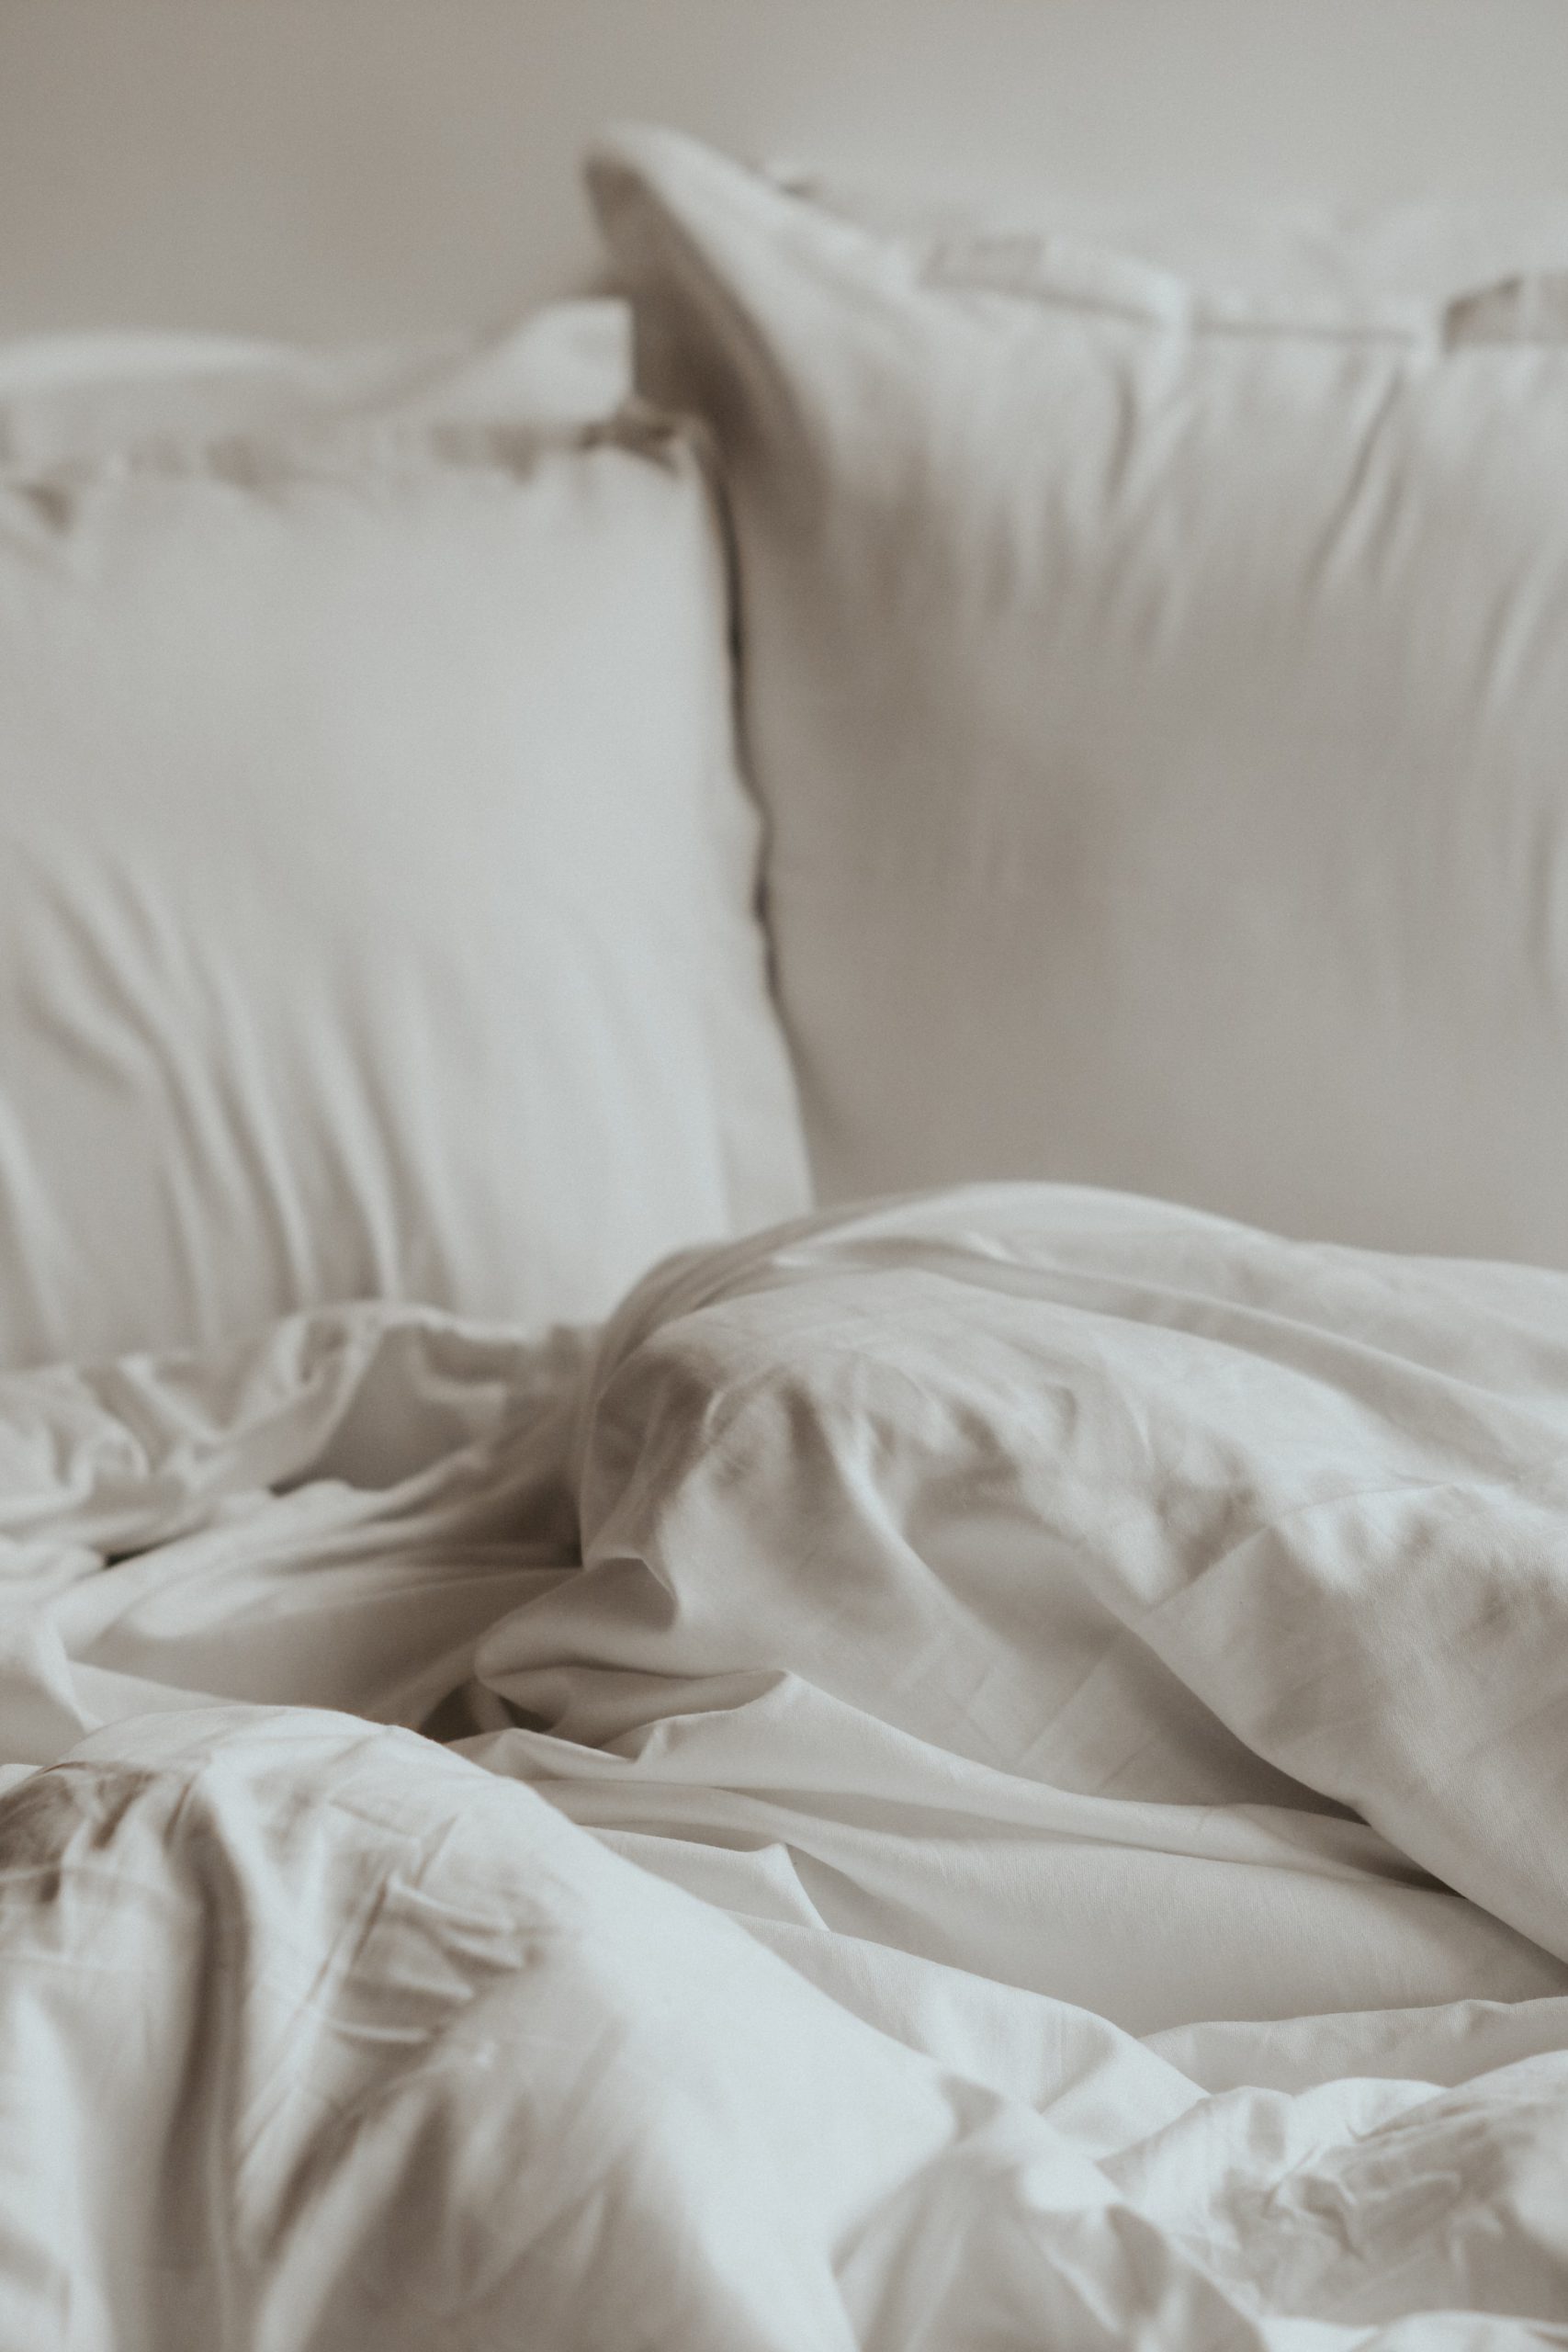 טיפים ועצות שימושיות לבחירת המצעים המושלמים עבור המיטה שלכם